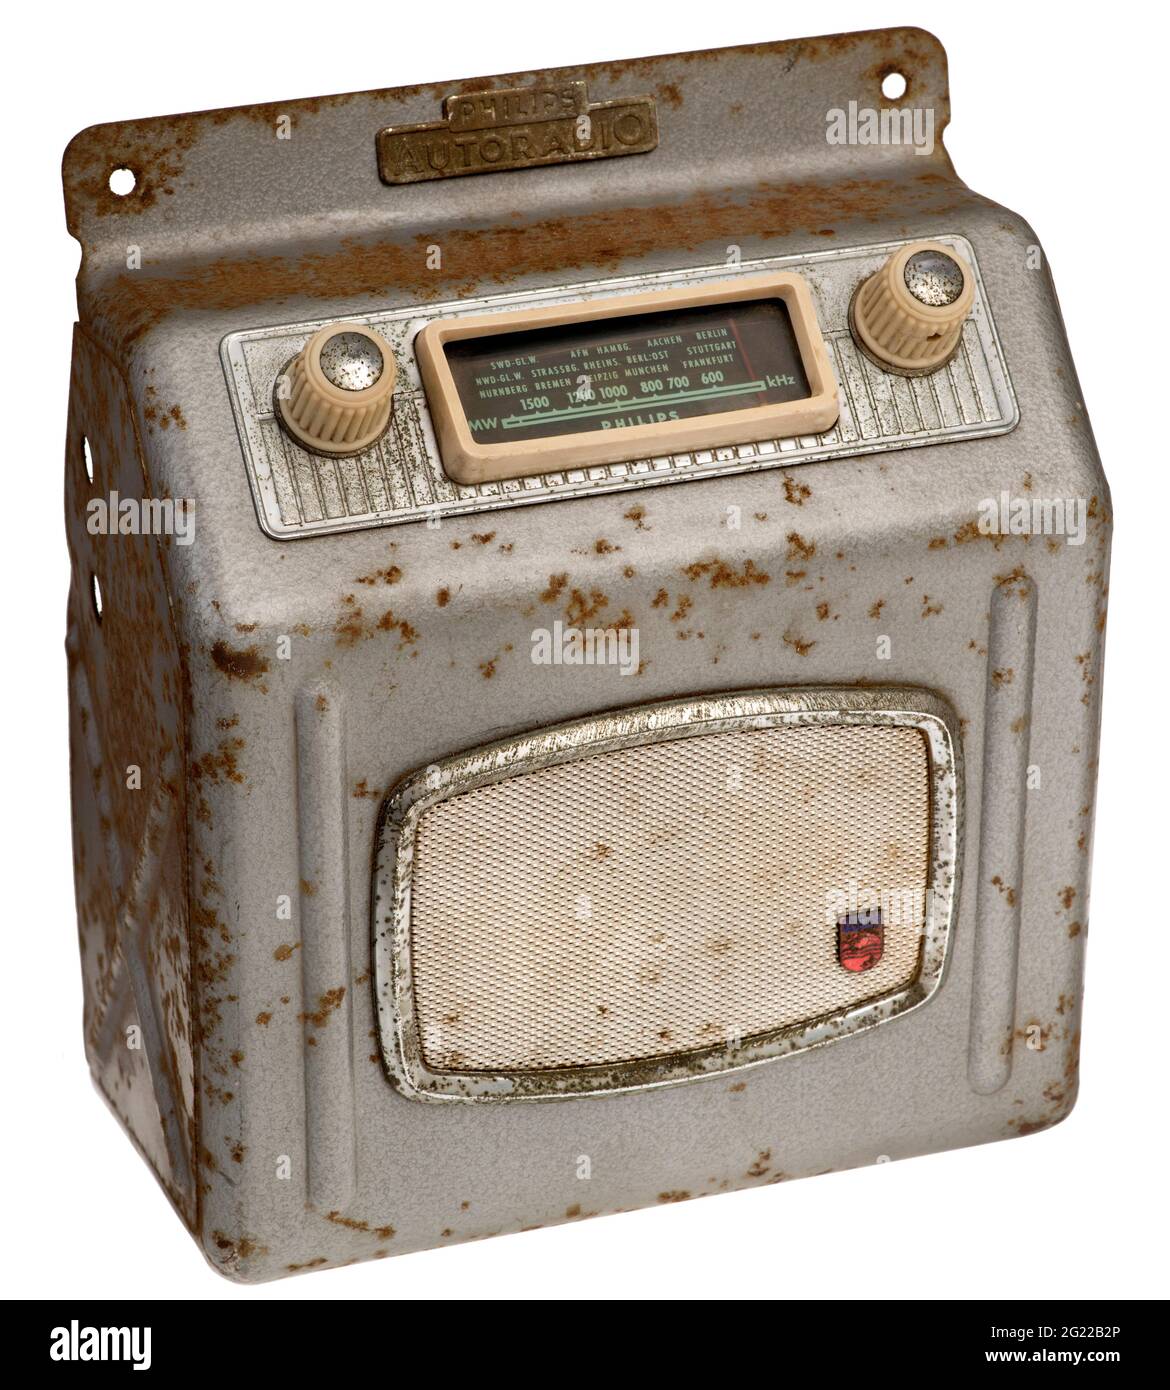 antigua radio para coche philips-modelo 22 r n - Compra venta en  todocoleccion